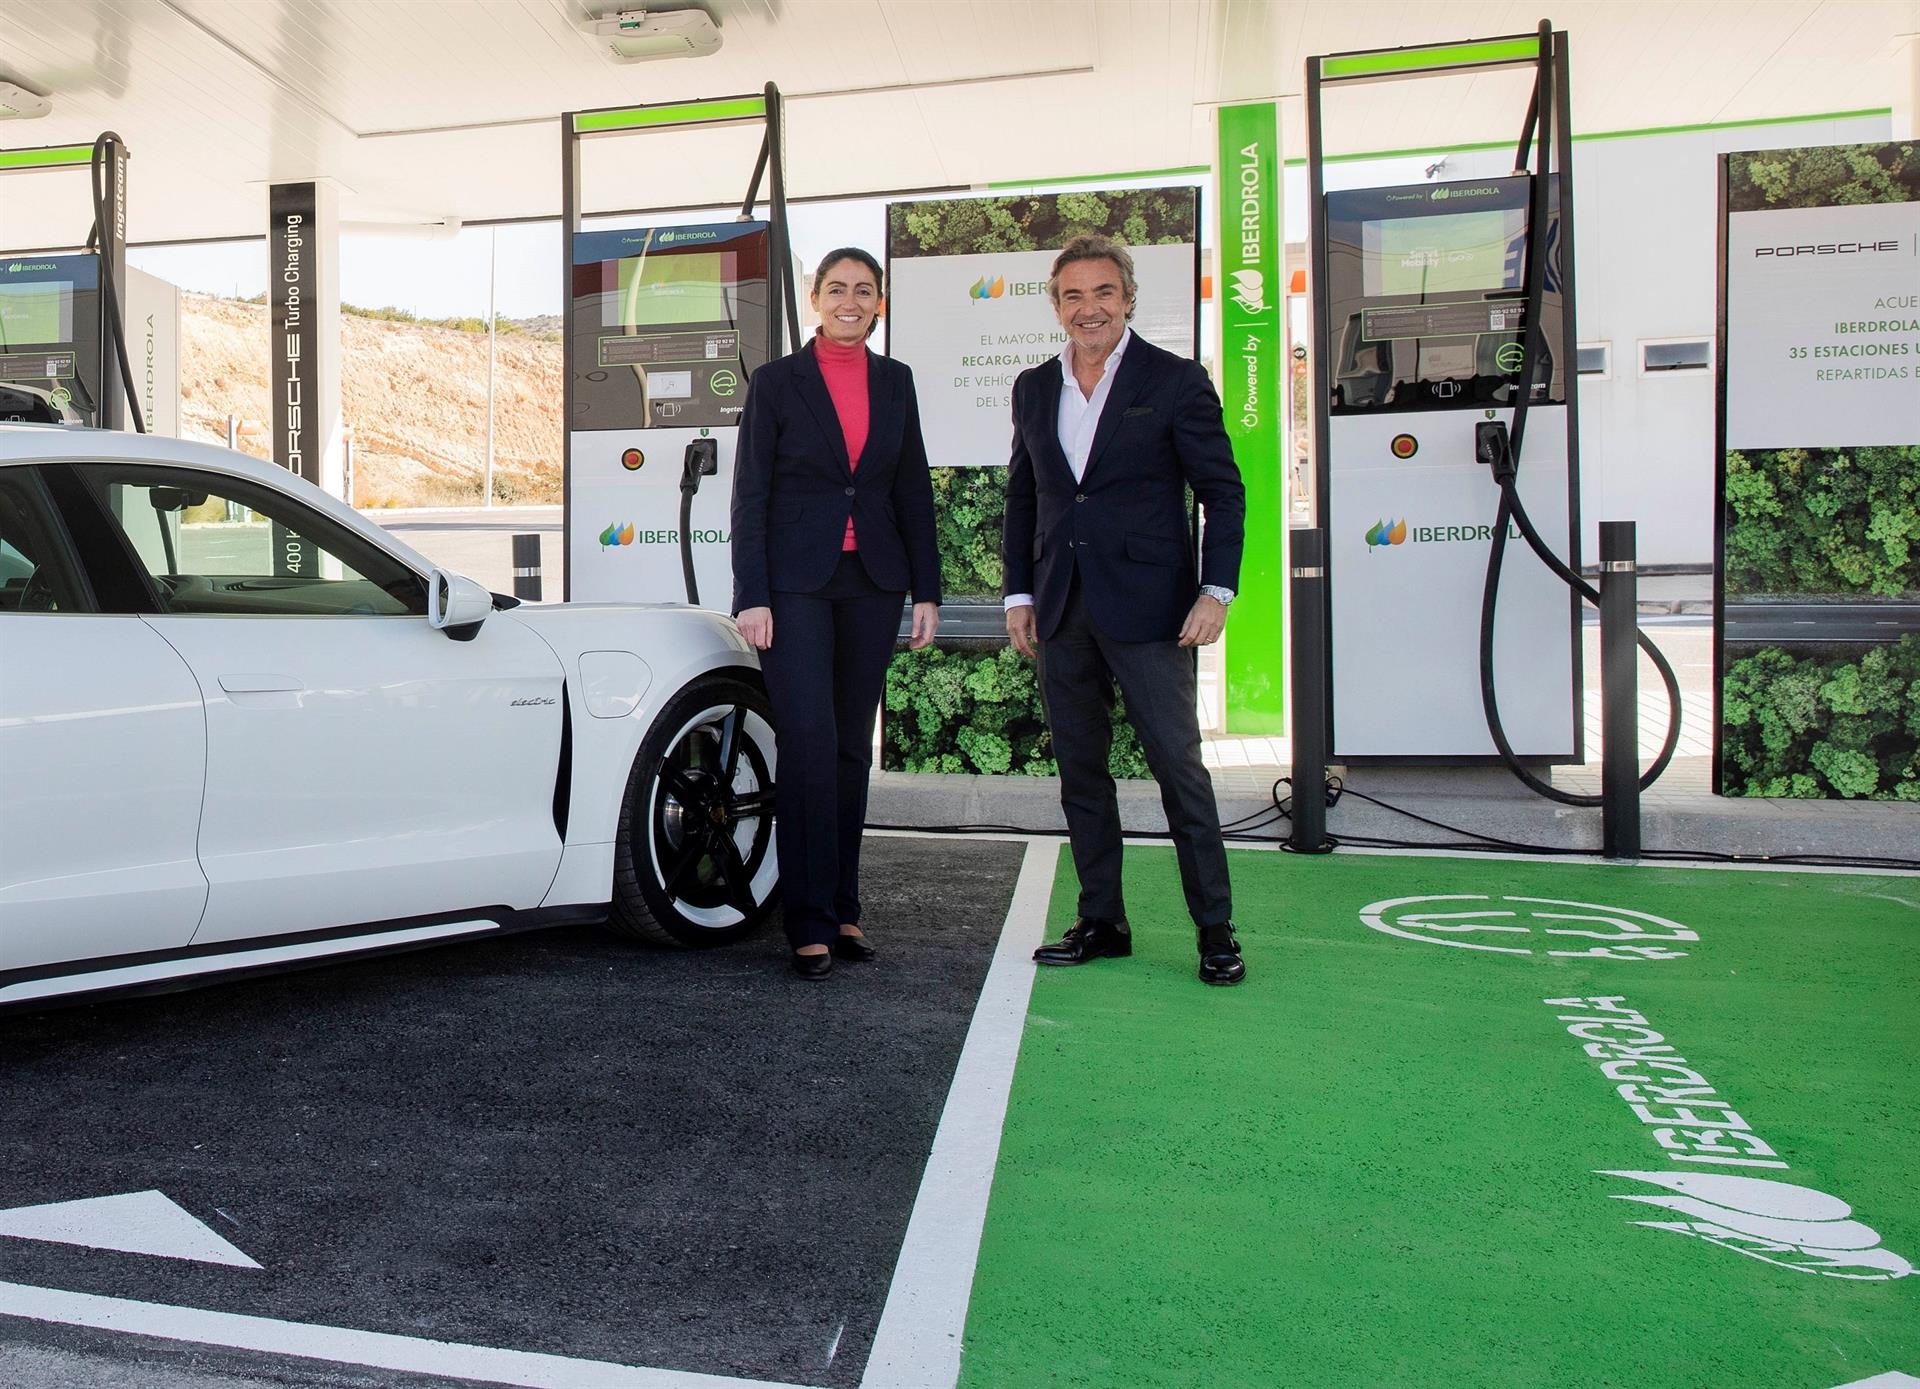 Inaugurado en Elche el mayor hub de recarga ultrarrápida para vehículos eléctricos del sur de Europa